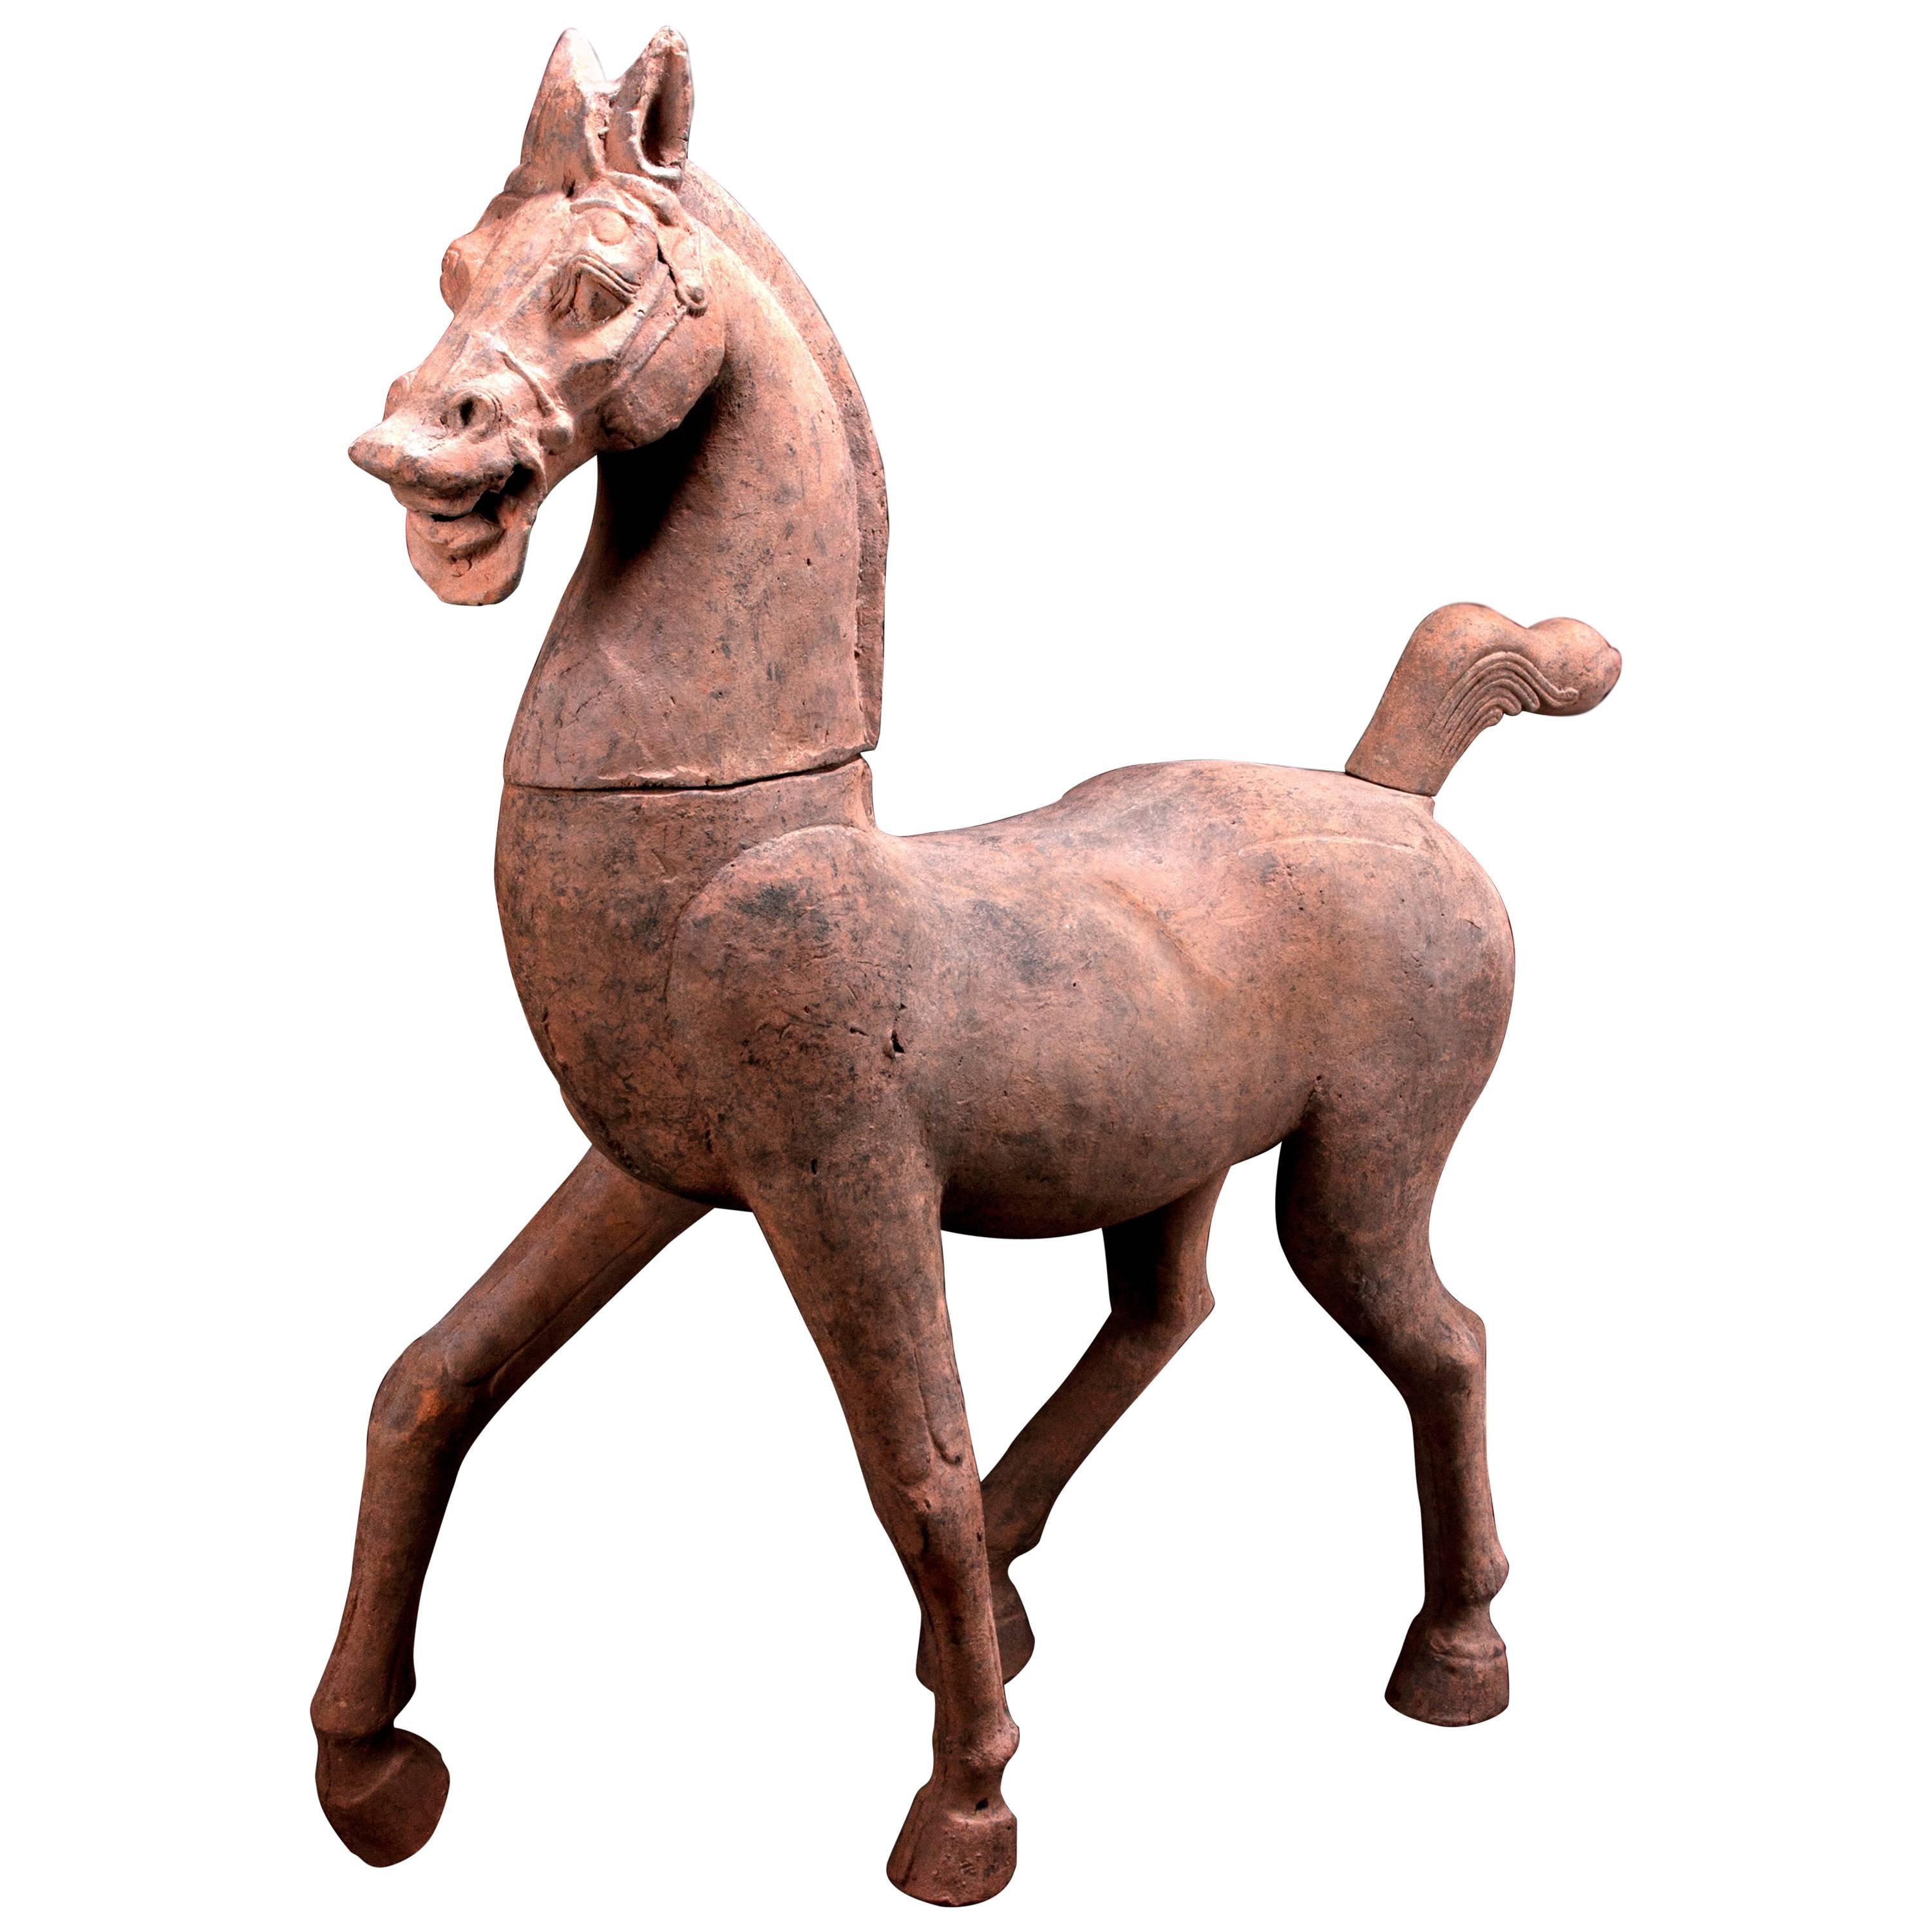 Monumentale cavallo di terracotta della dinastia Han - Test Test - Cina, '206 a.C.-220 d.C.'